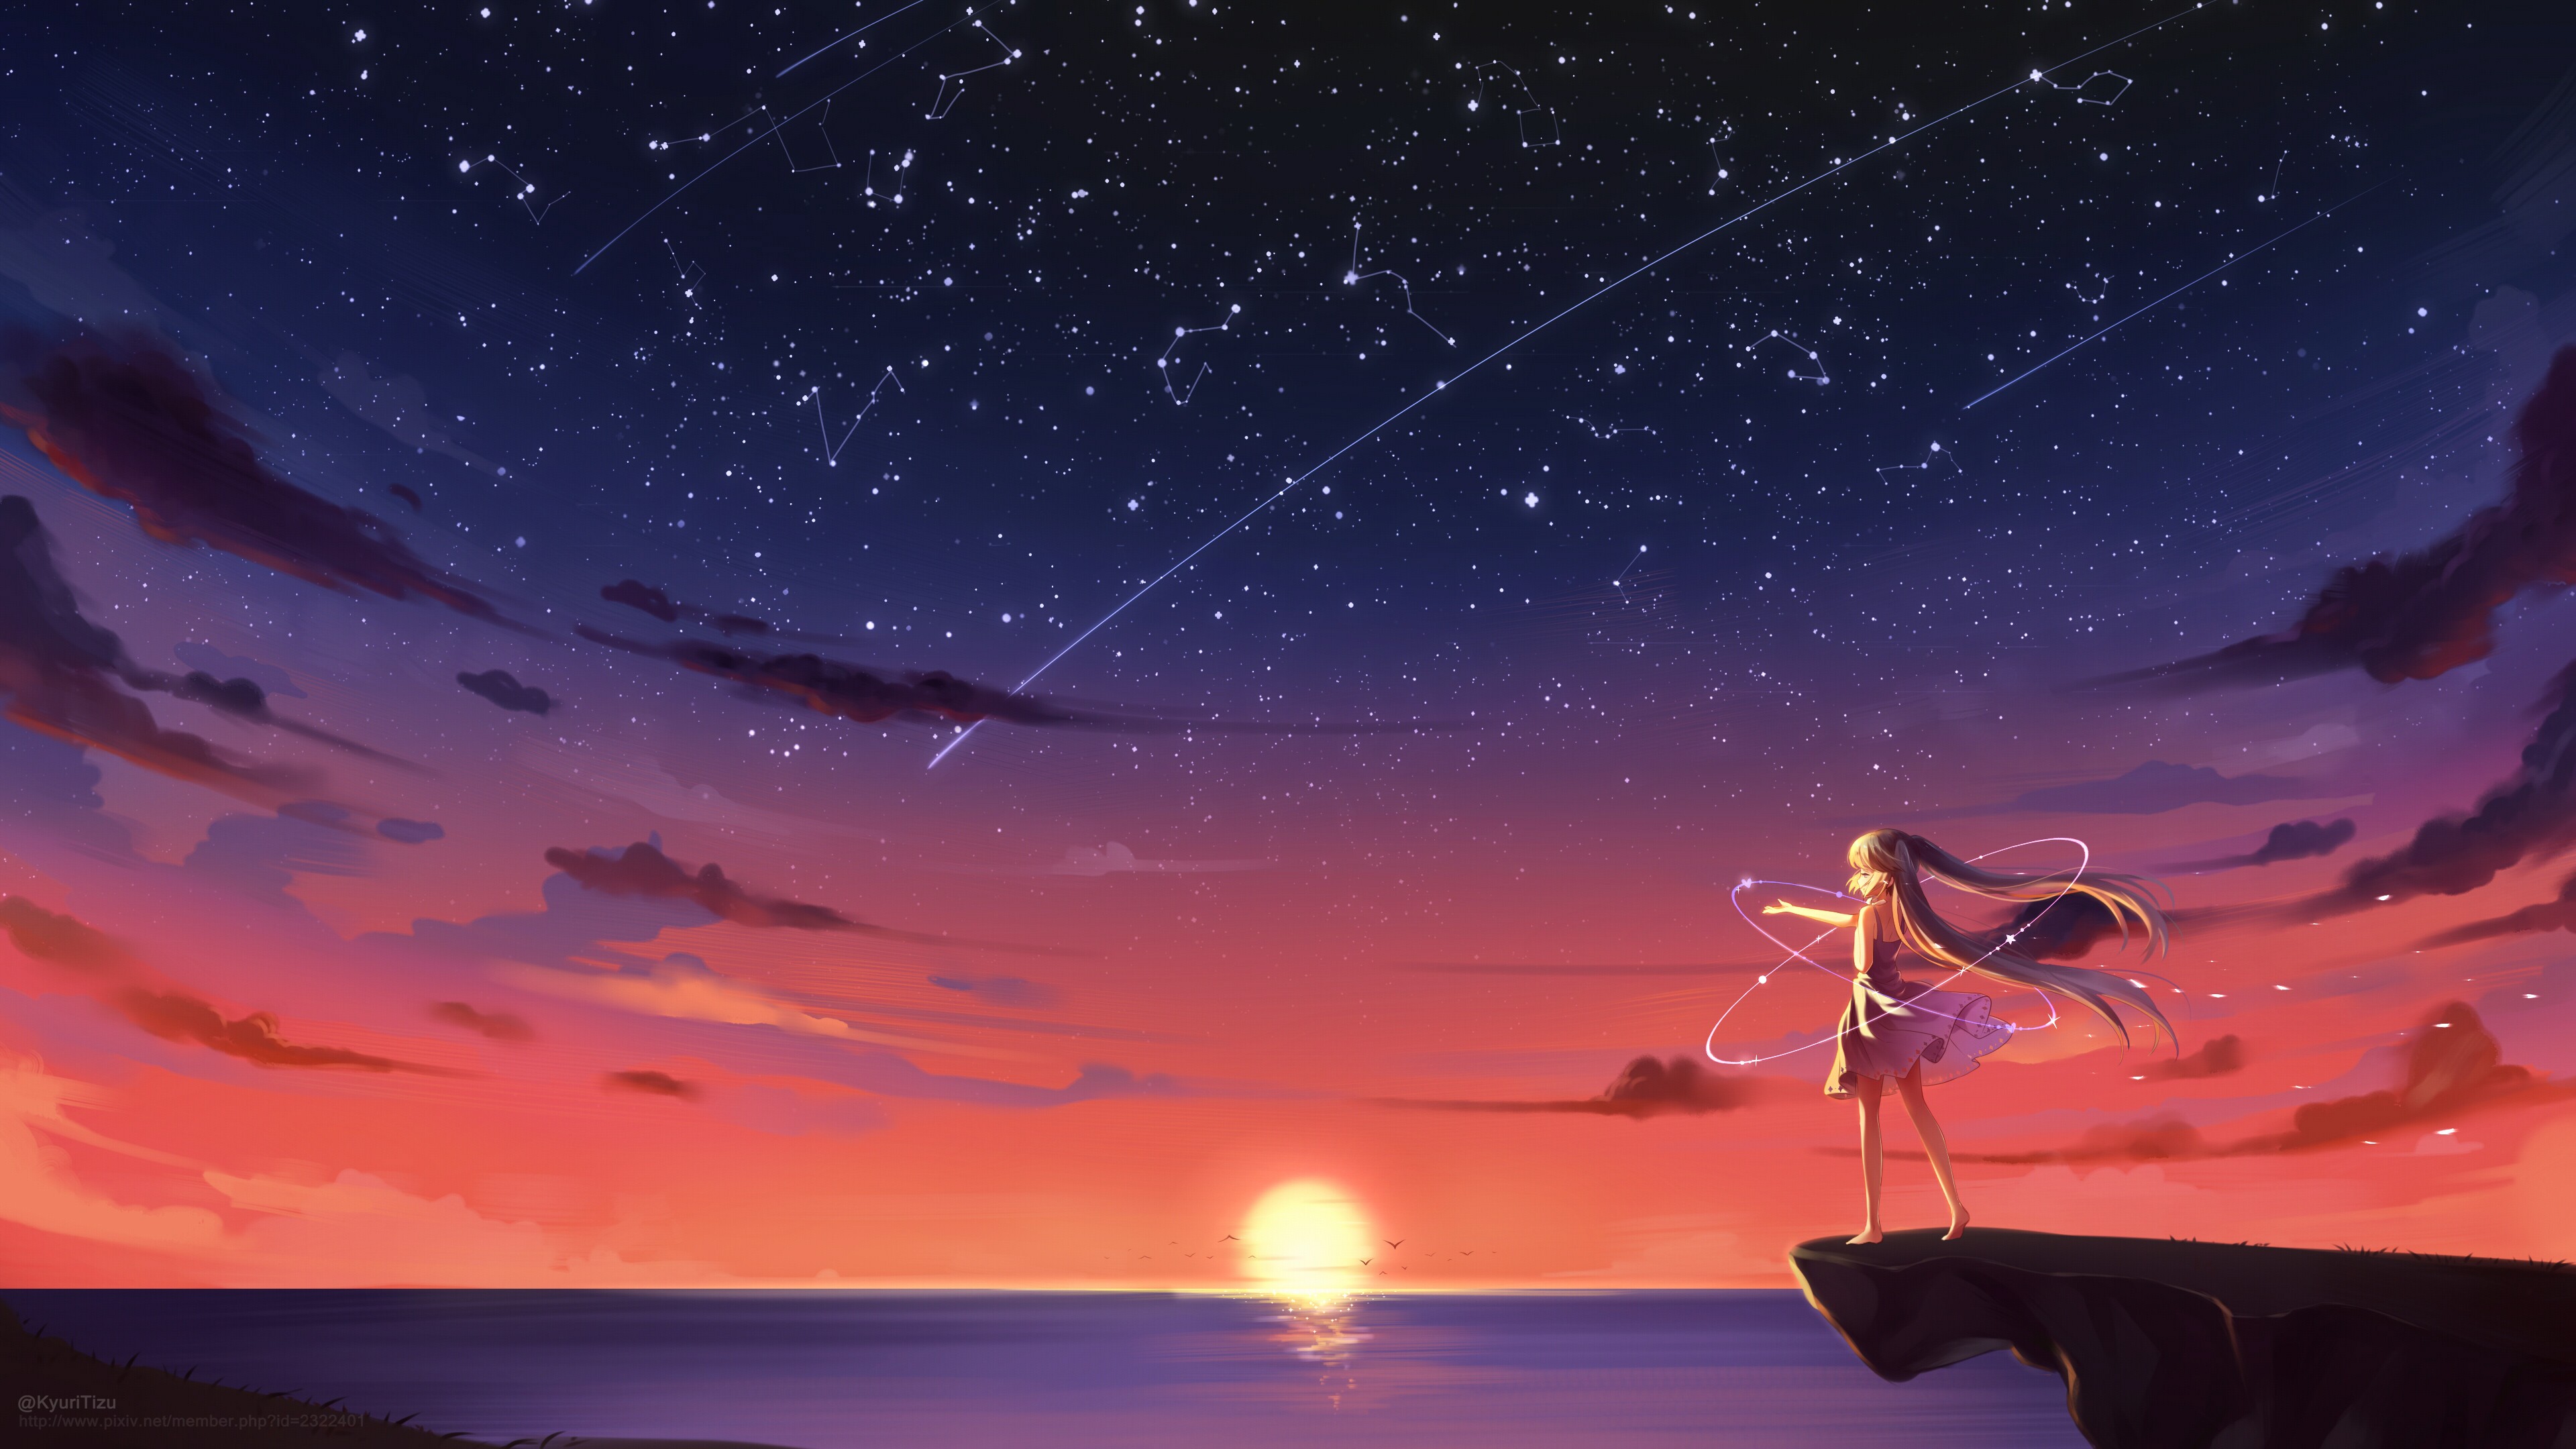 Anime 3840x2160 anime anime girls sunset sea cliff long hair stars sky Hatsune Miku Vocaloid fantasy art fantasy girl sunlight standing dress barefoot